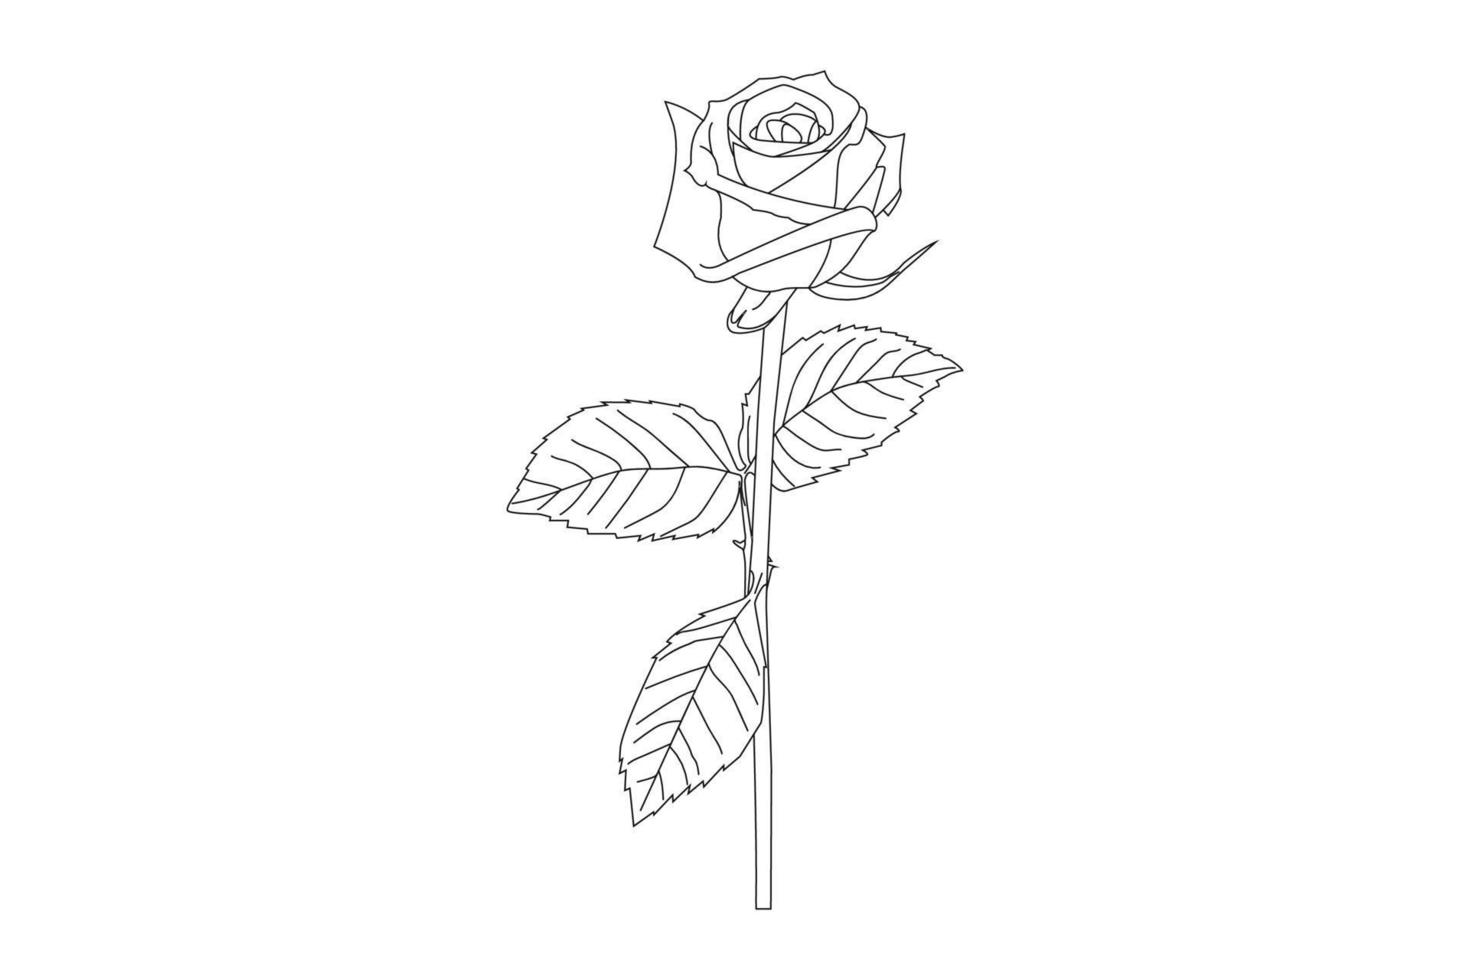 dessin de fleurs roses avec dessin au trait sur fond blanc. fleurs de contour de vecteur. page de coloriage d'art en ligne avec des roses et des feuilles vecteur